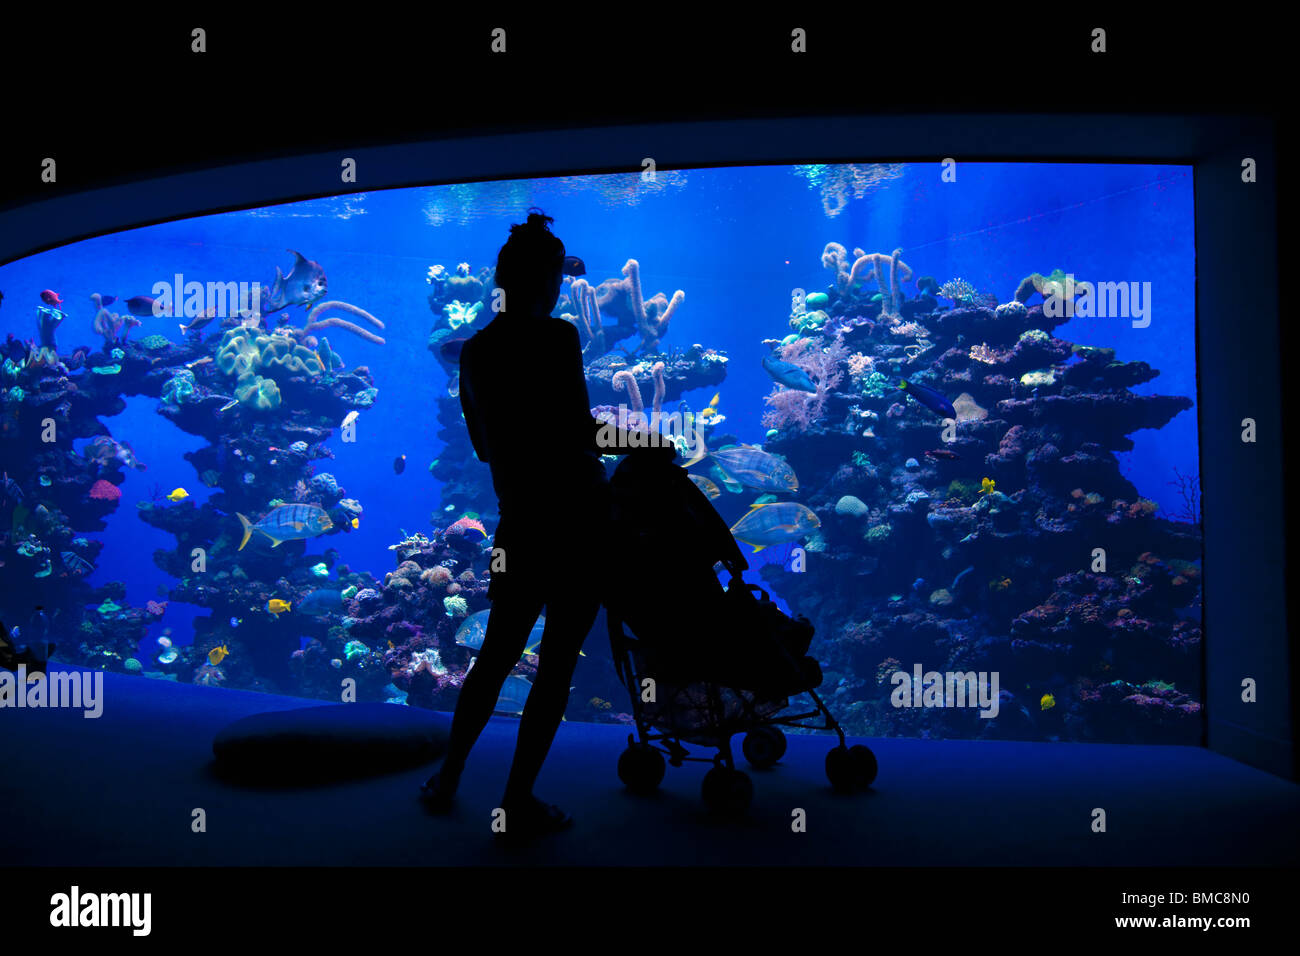 Palma Aquarium interior with mother and pushchair Playa de Palma Majorca Mallorca Spain Europe EU Stock Photo